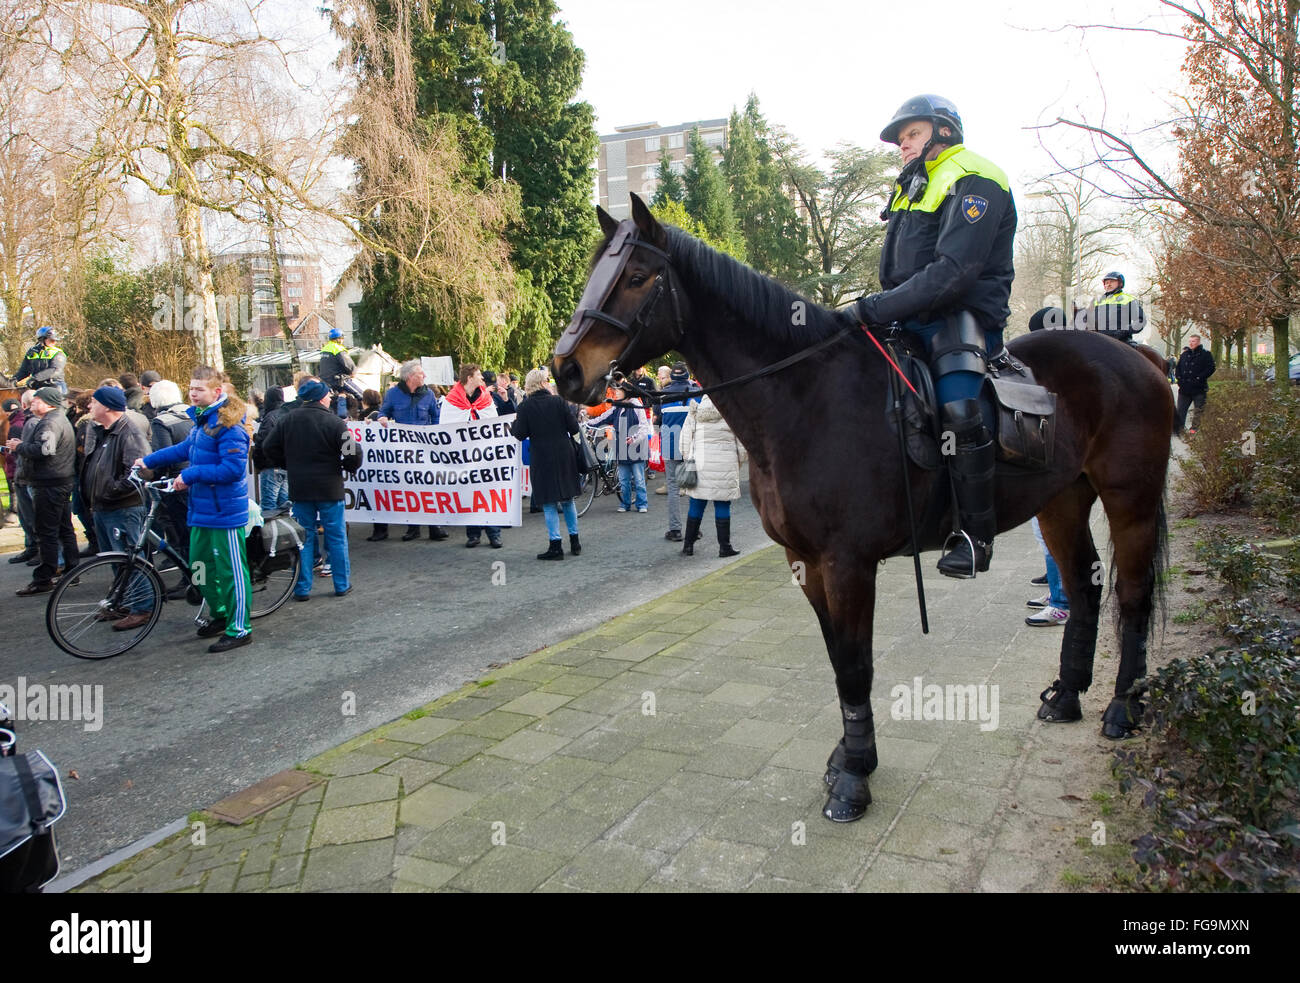 Un policier sur un cheval est à regarder les gens qui manifestent contre un immense camp de réfugiés migrants Banque D'Images